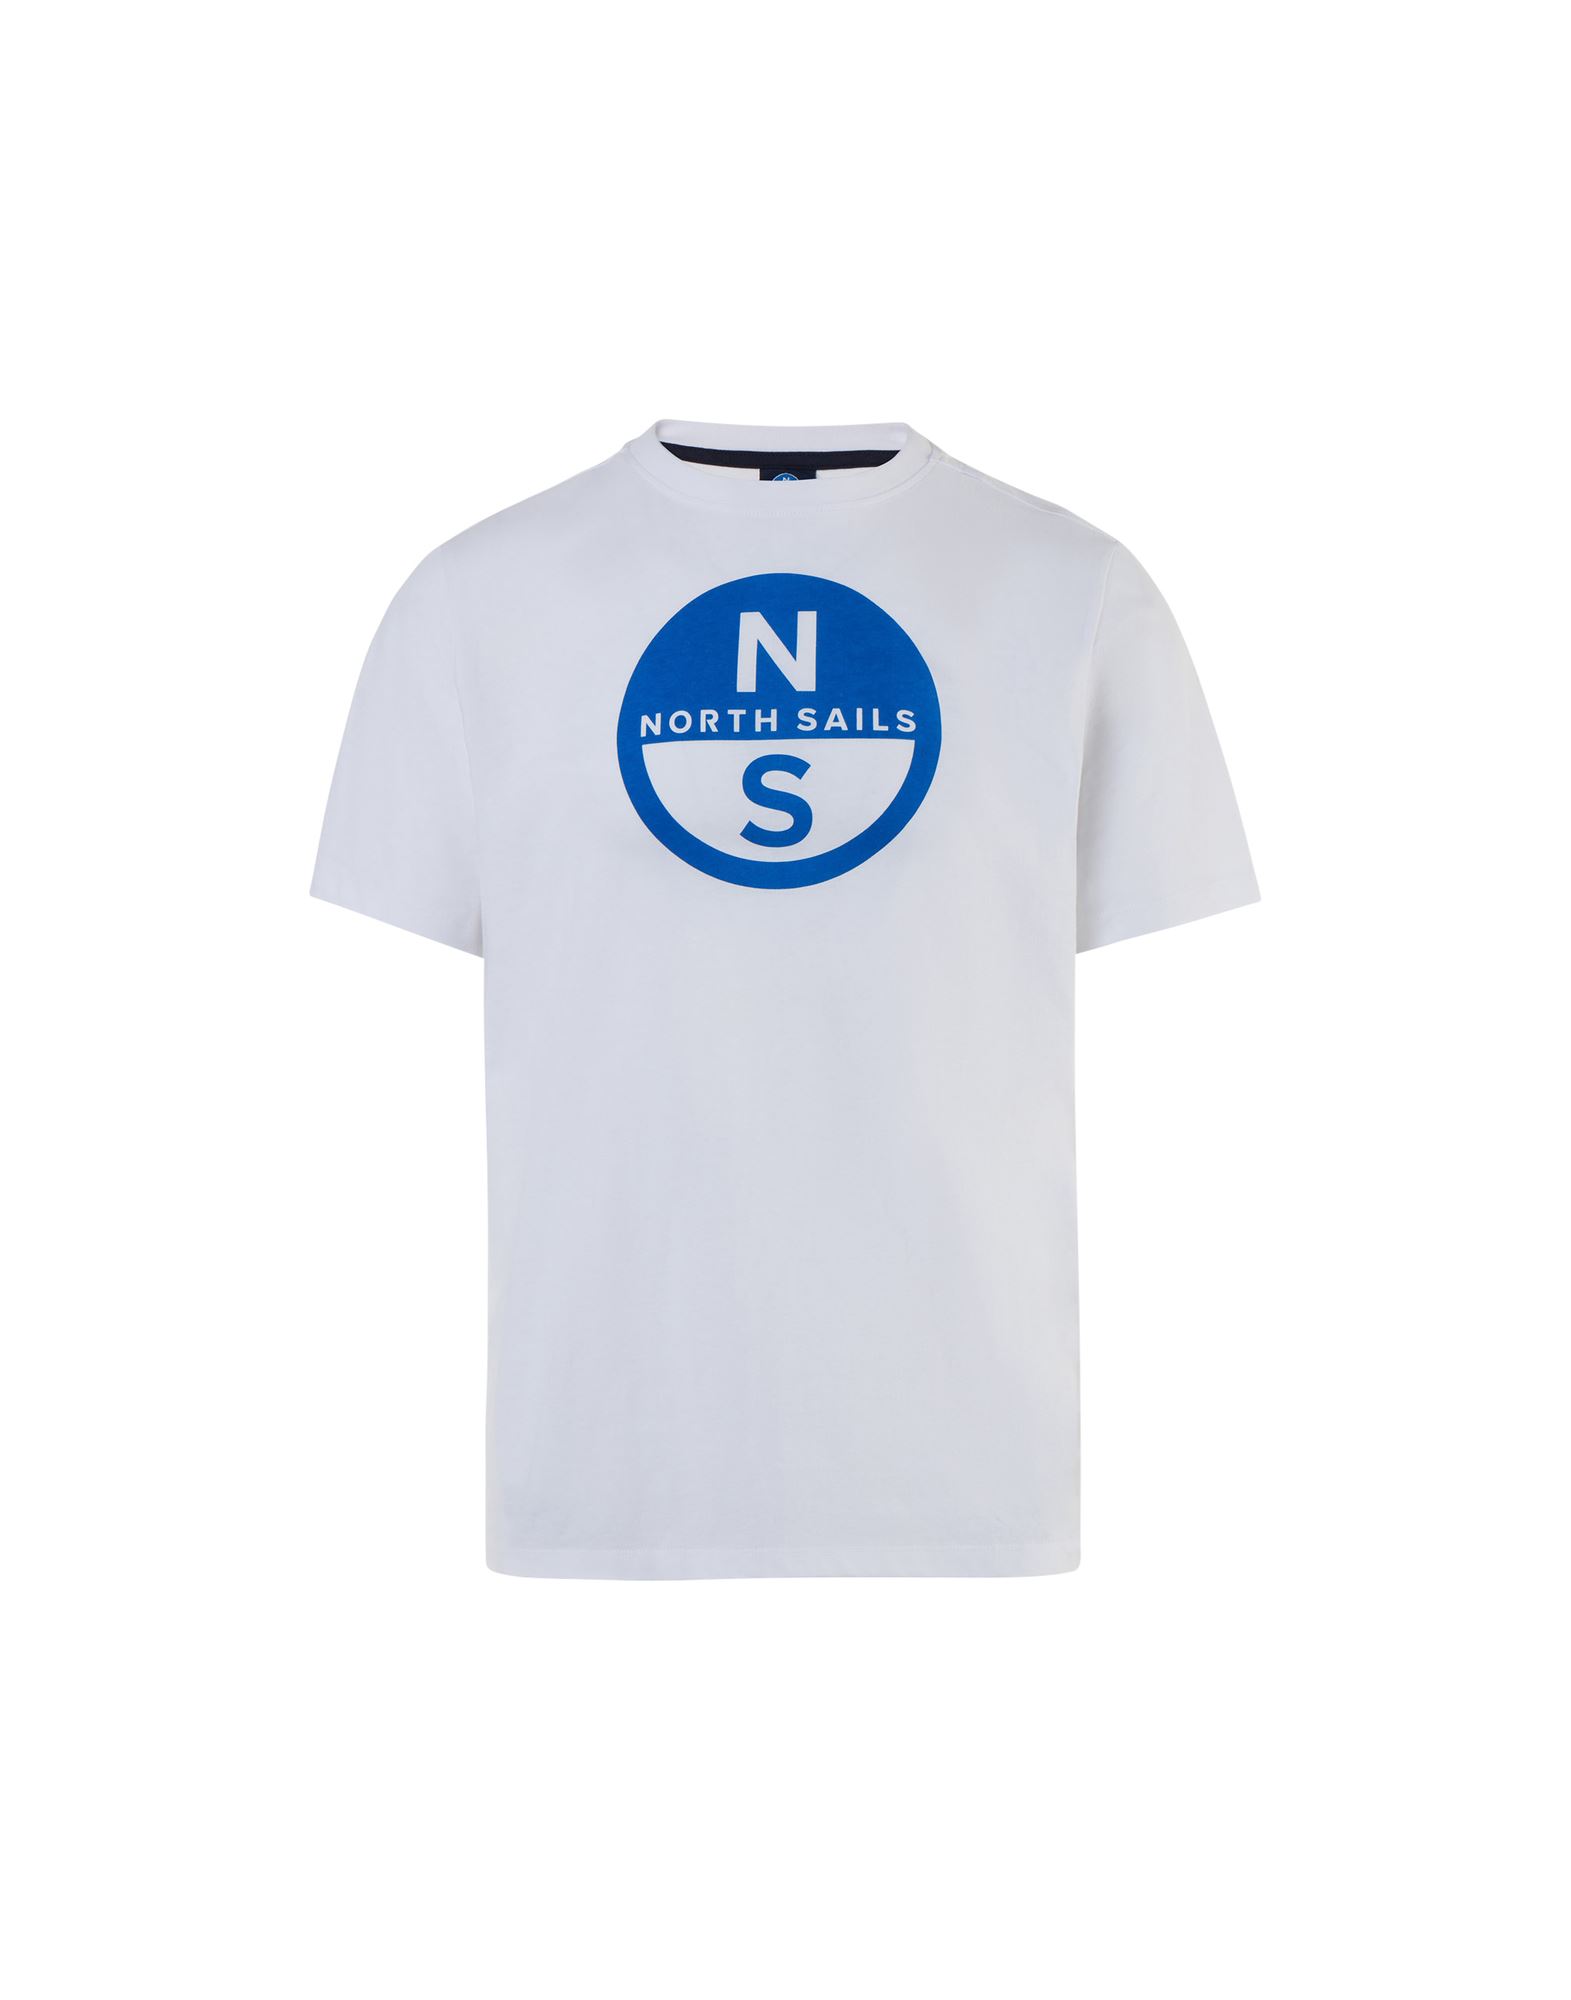 NORTH SAILS T-shirts Herren Weiß von NORTH SAILS